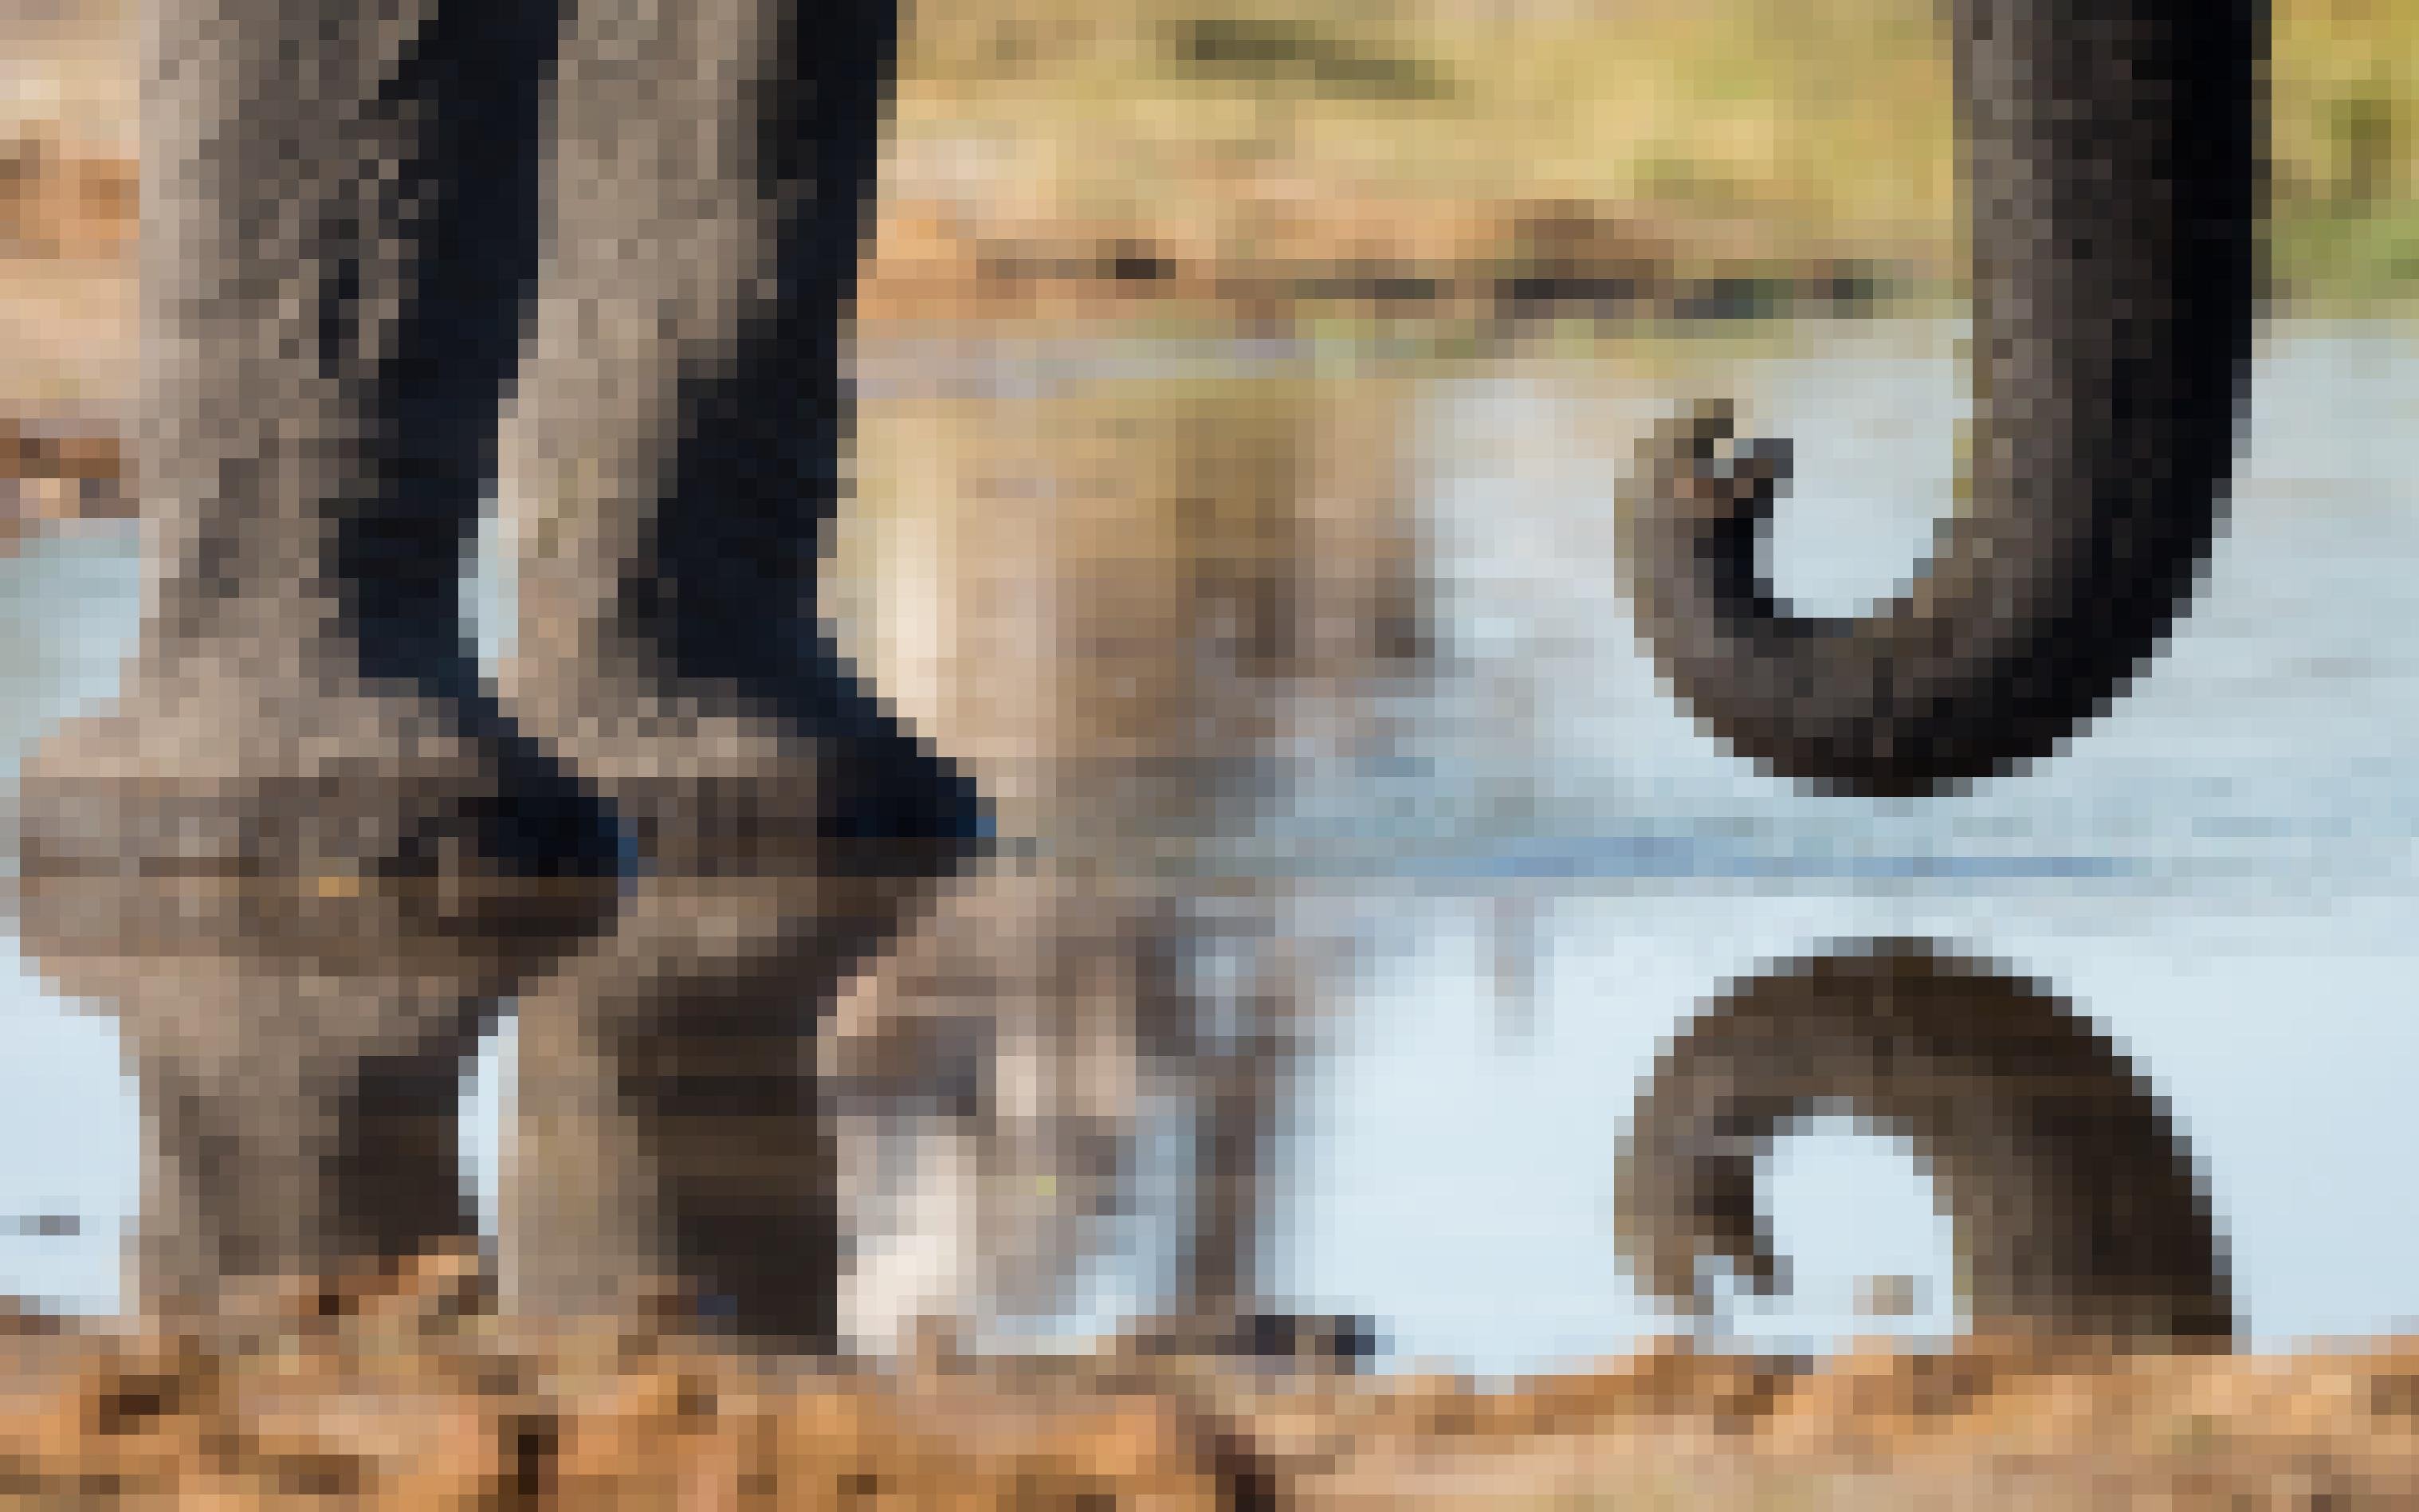 Elefant steht im heranströmenden Wasser im Okavango-Delta. Es sind nur die stämmigen Vorderbeine und ein Teil des hängenden Rüssels zu sehen.